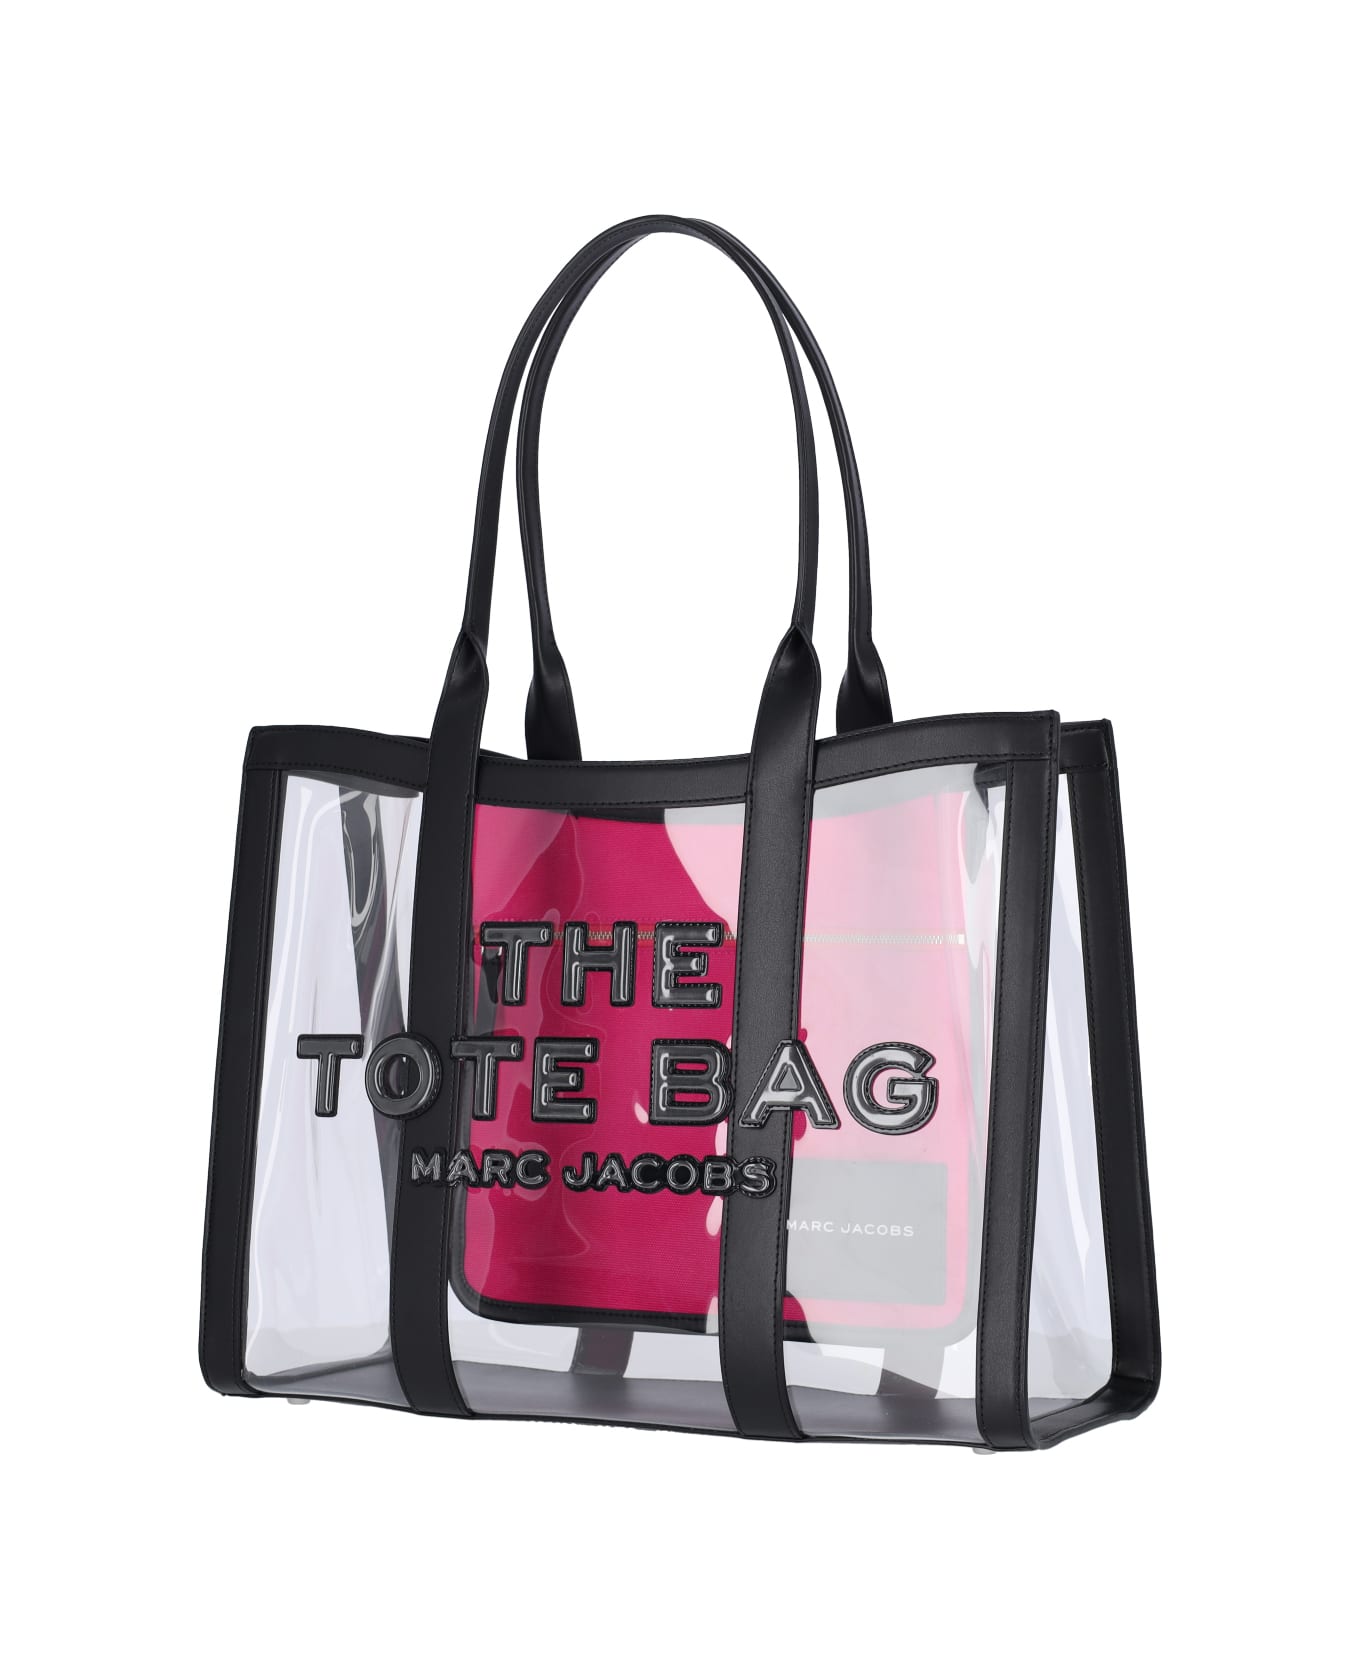 Marc Jacobs Large Transparent Tote Bag - Transparent トートバッグ